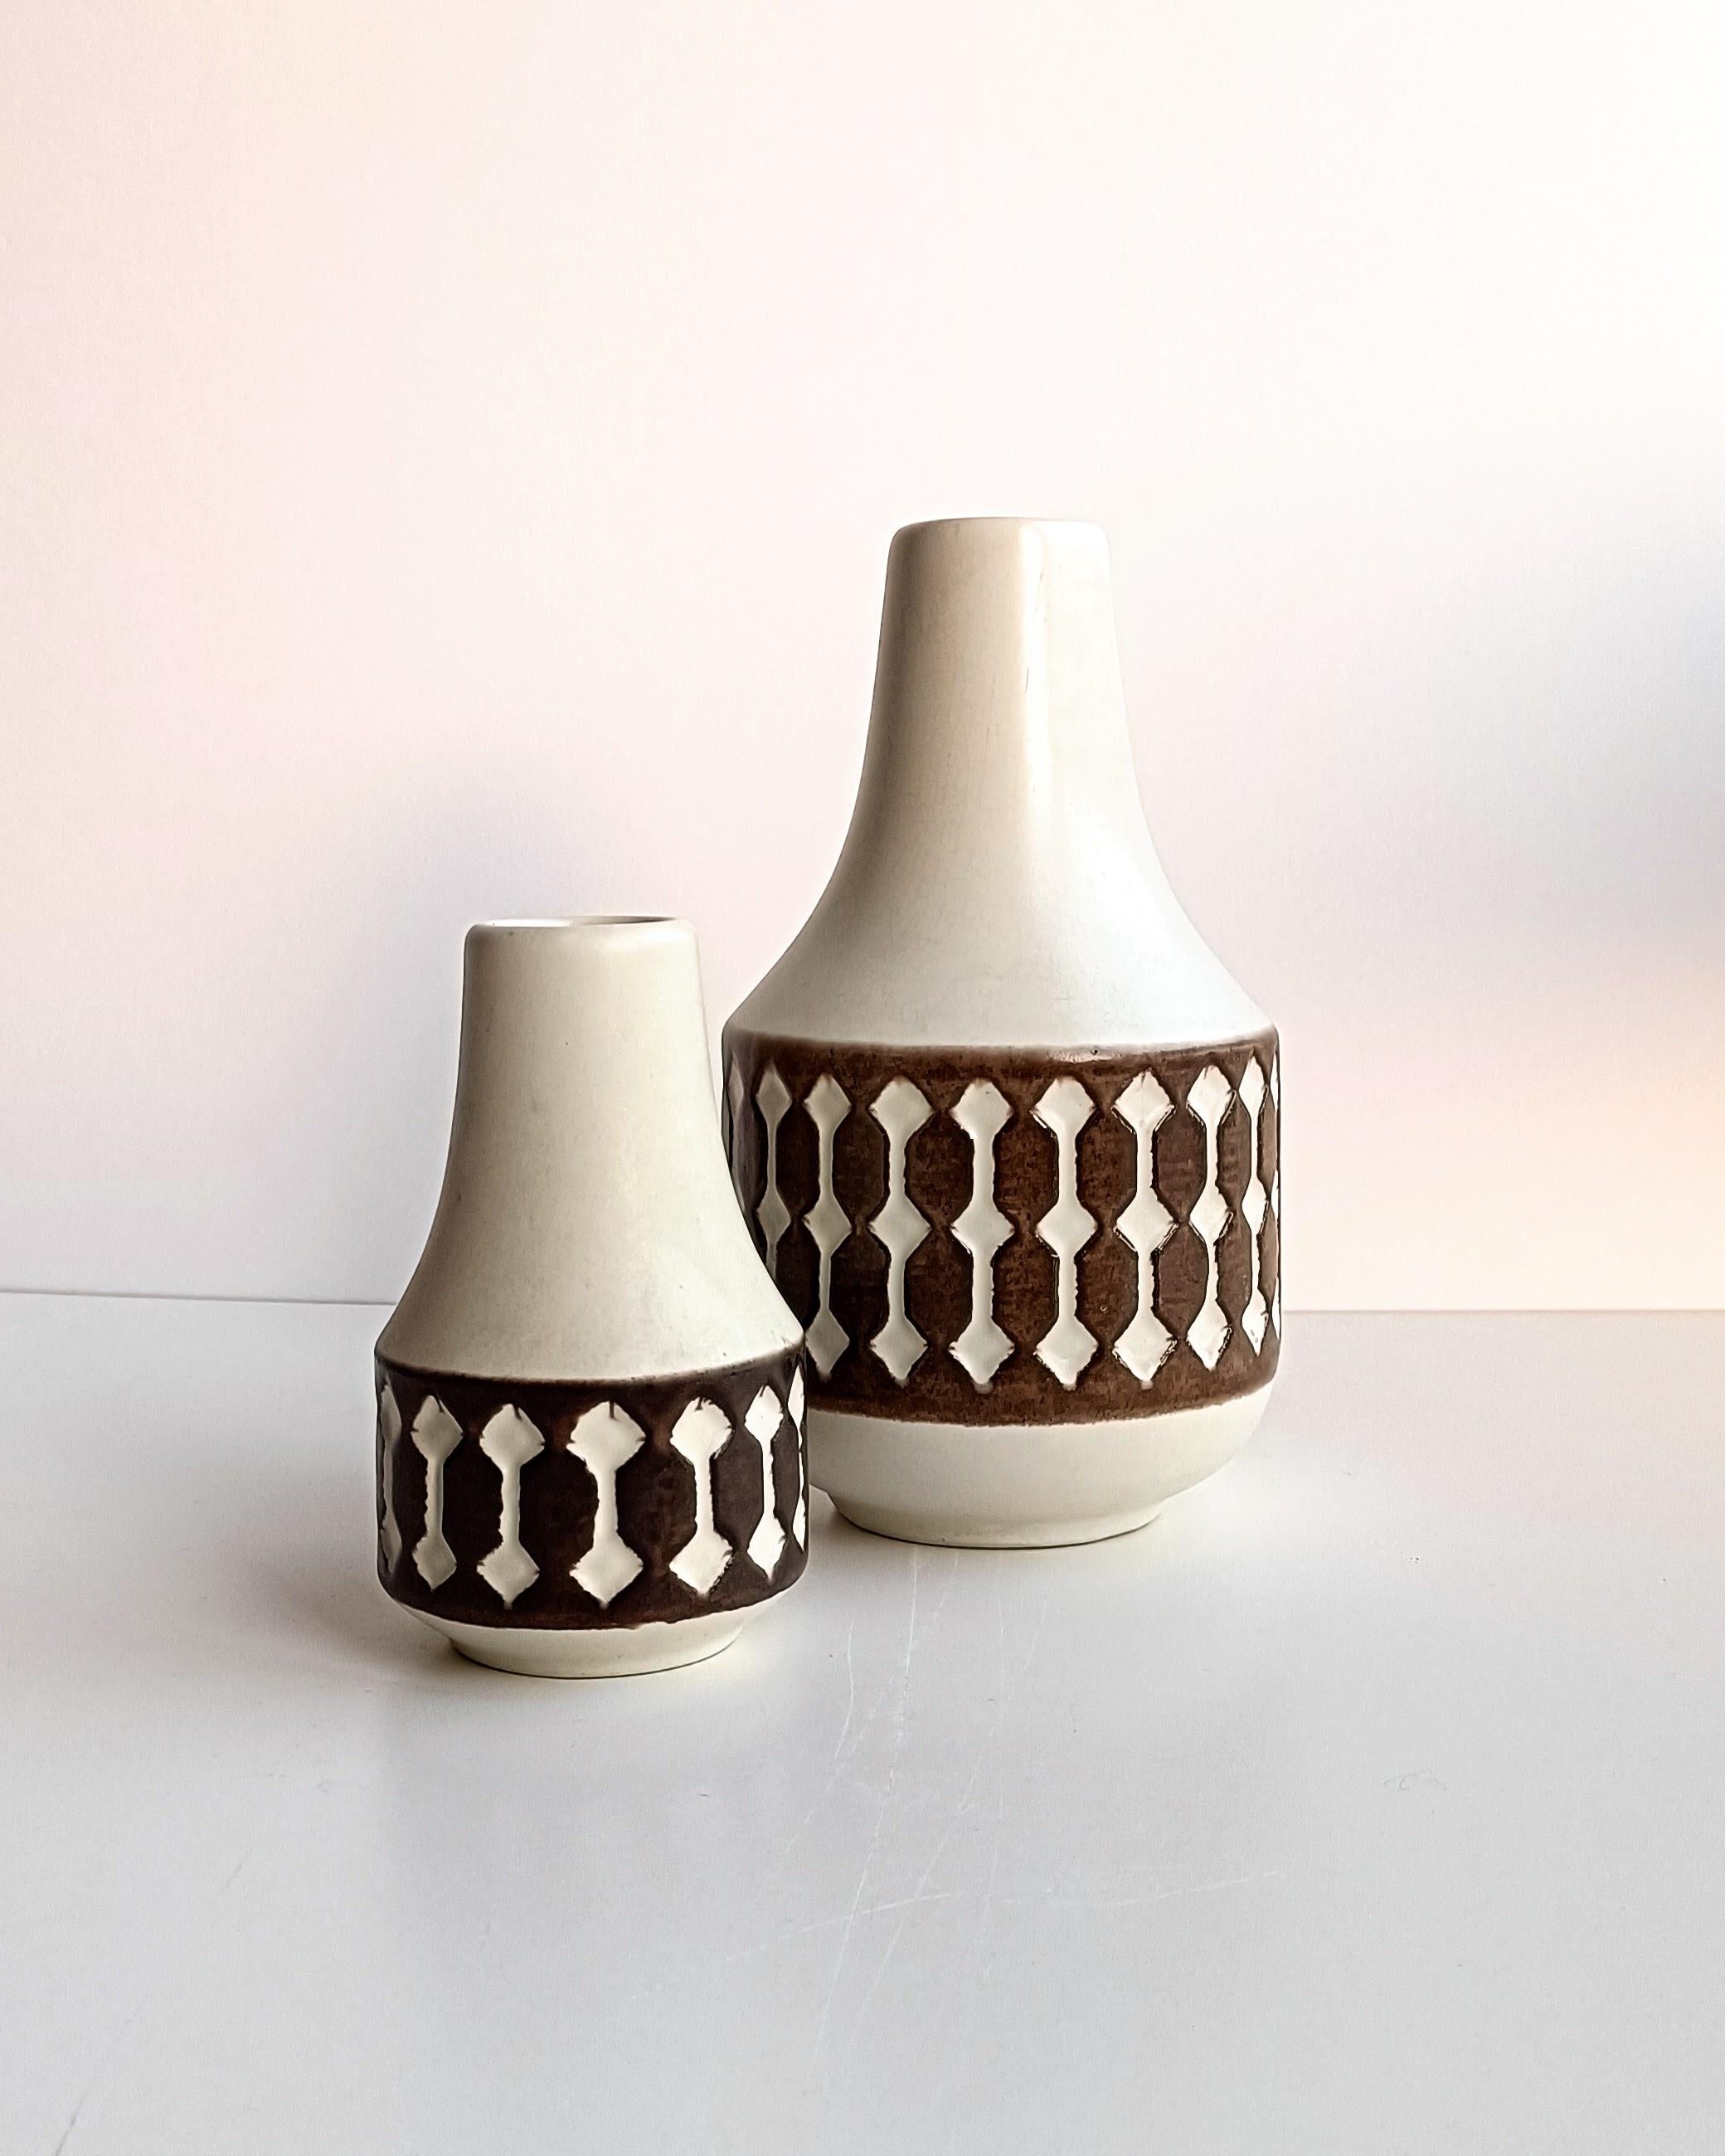 Magnifique paire de vases en céramique de Jasba fabriqués à la main en Allemagne de l'Ouest vers les années 1960. Leurs lignes épurées, leurs formes minimalistes et leurs couleurs subtiles capturent l'essence du design moderne du milieu du